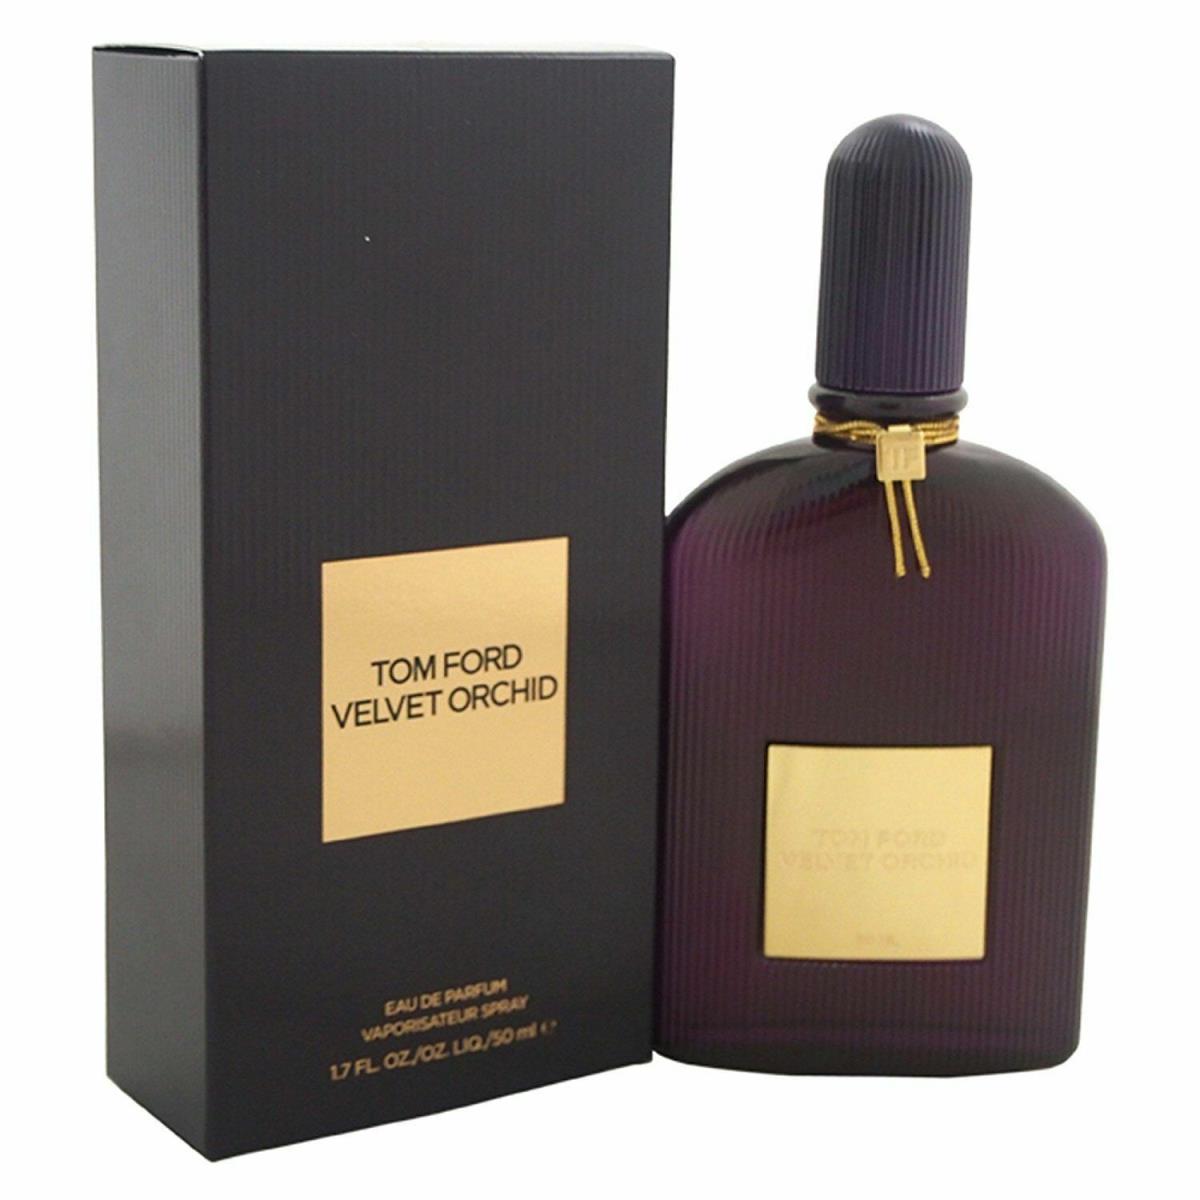 Tom Ford Velvet Orchid For Women 1.7 oz Eau de Parfum Spray